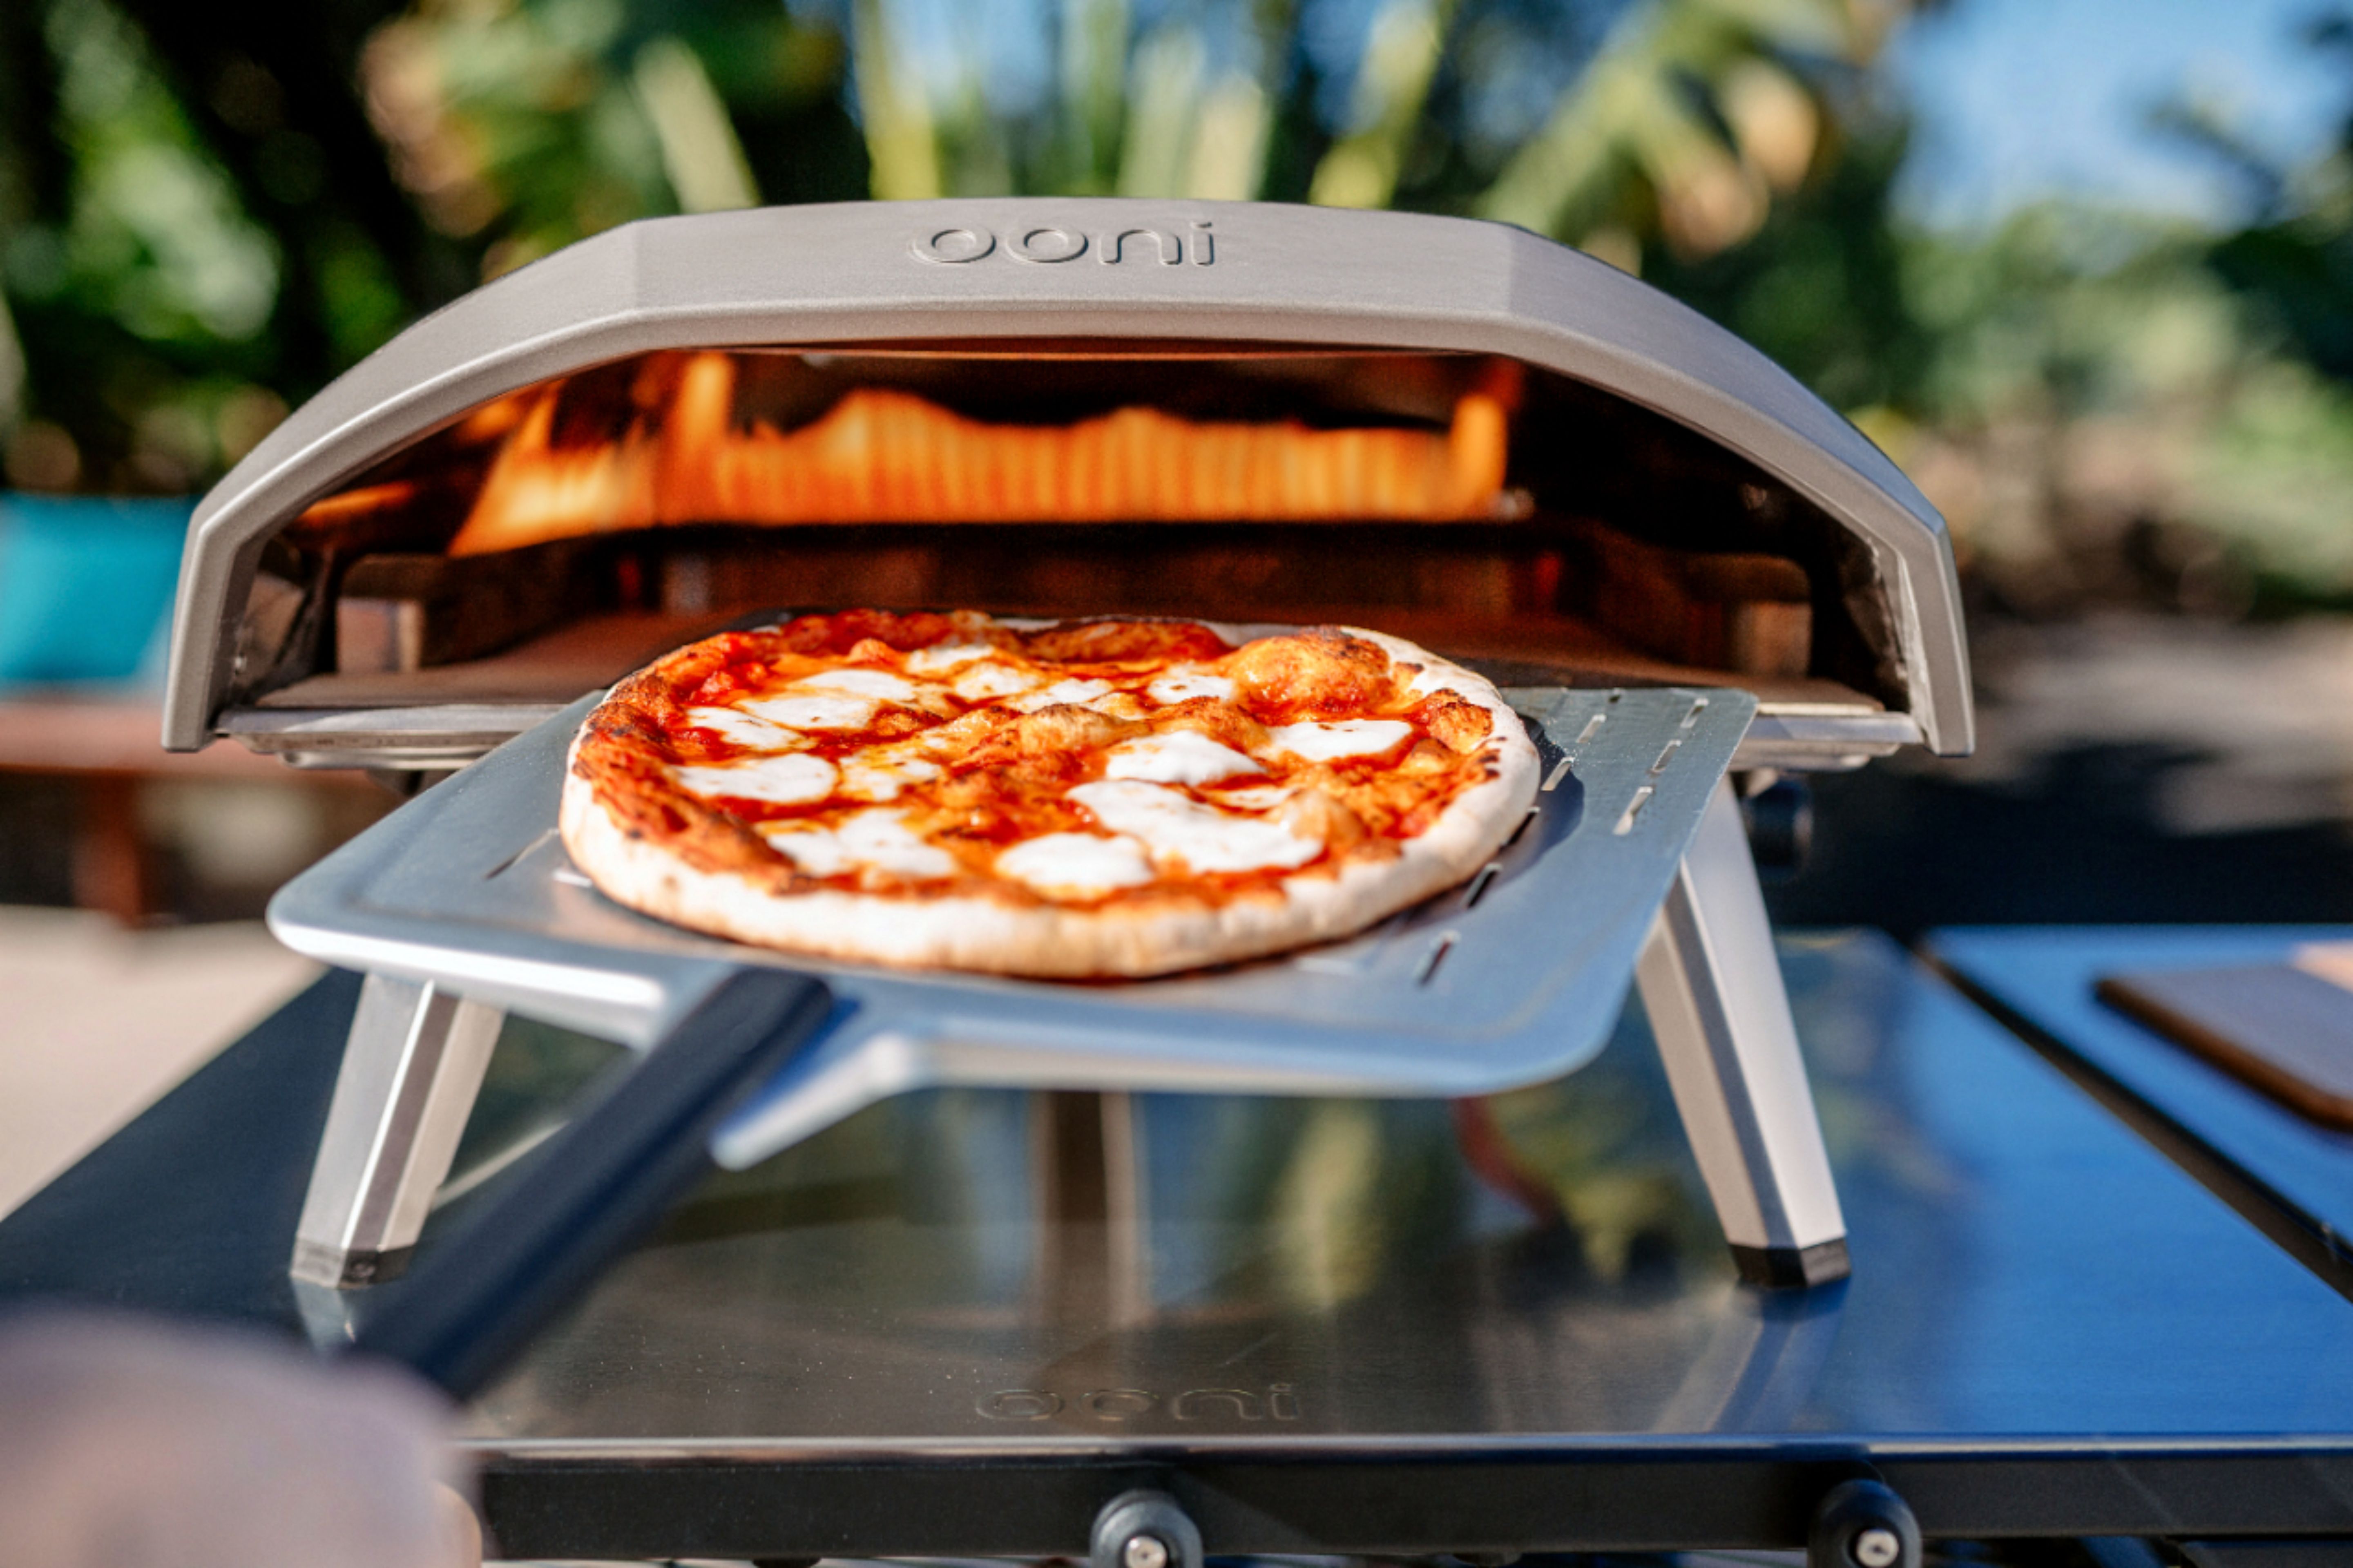 Alfa 4 Pizze Pizza Oven Top Cover Grey CVR-4PIZ-T - Best Buy